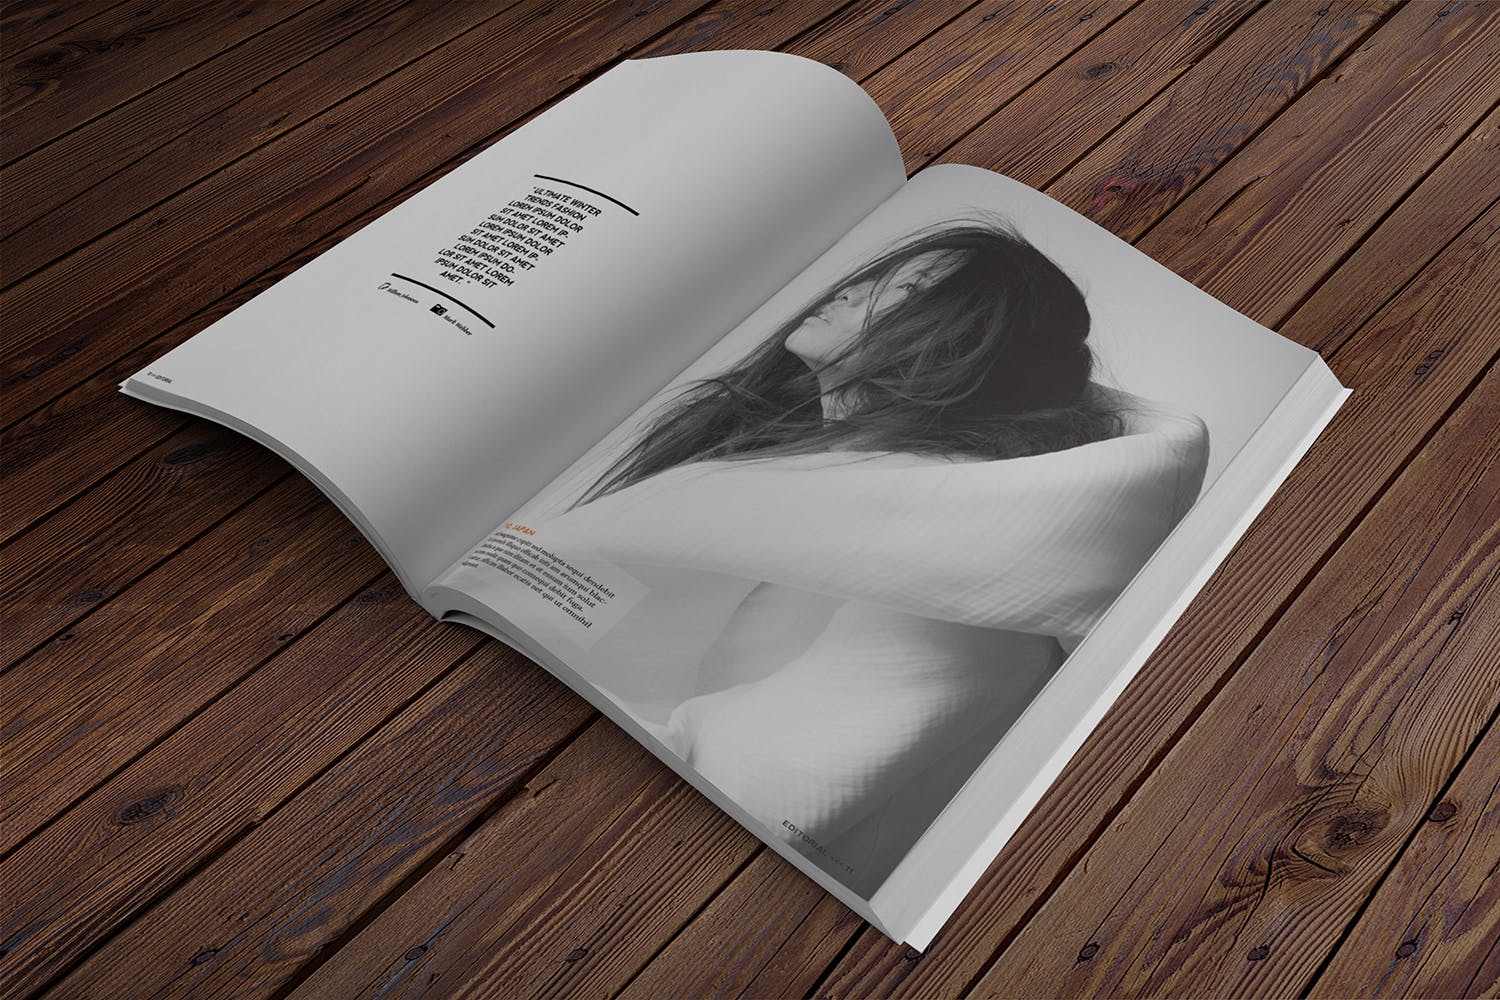 杂志内页排版设计透视图样机非凡图库精选 Magazine Mockup Perspective View插图(2)